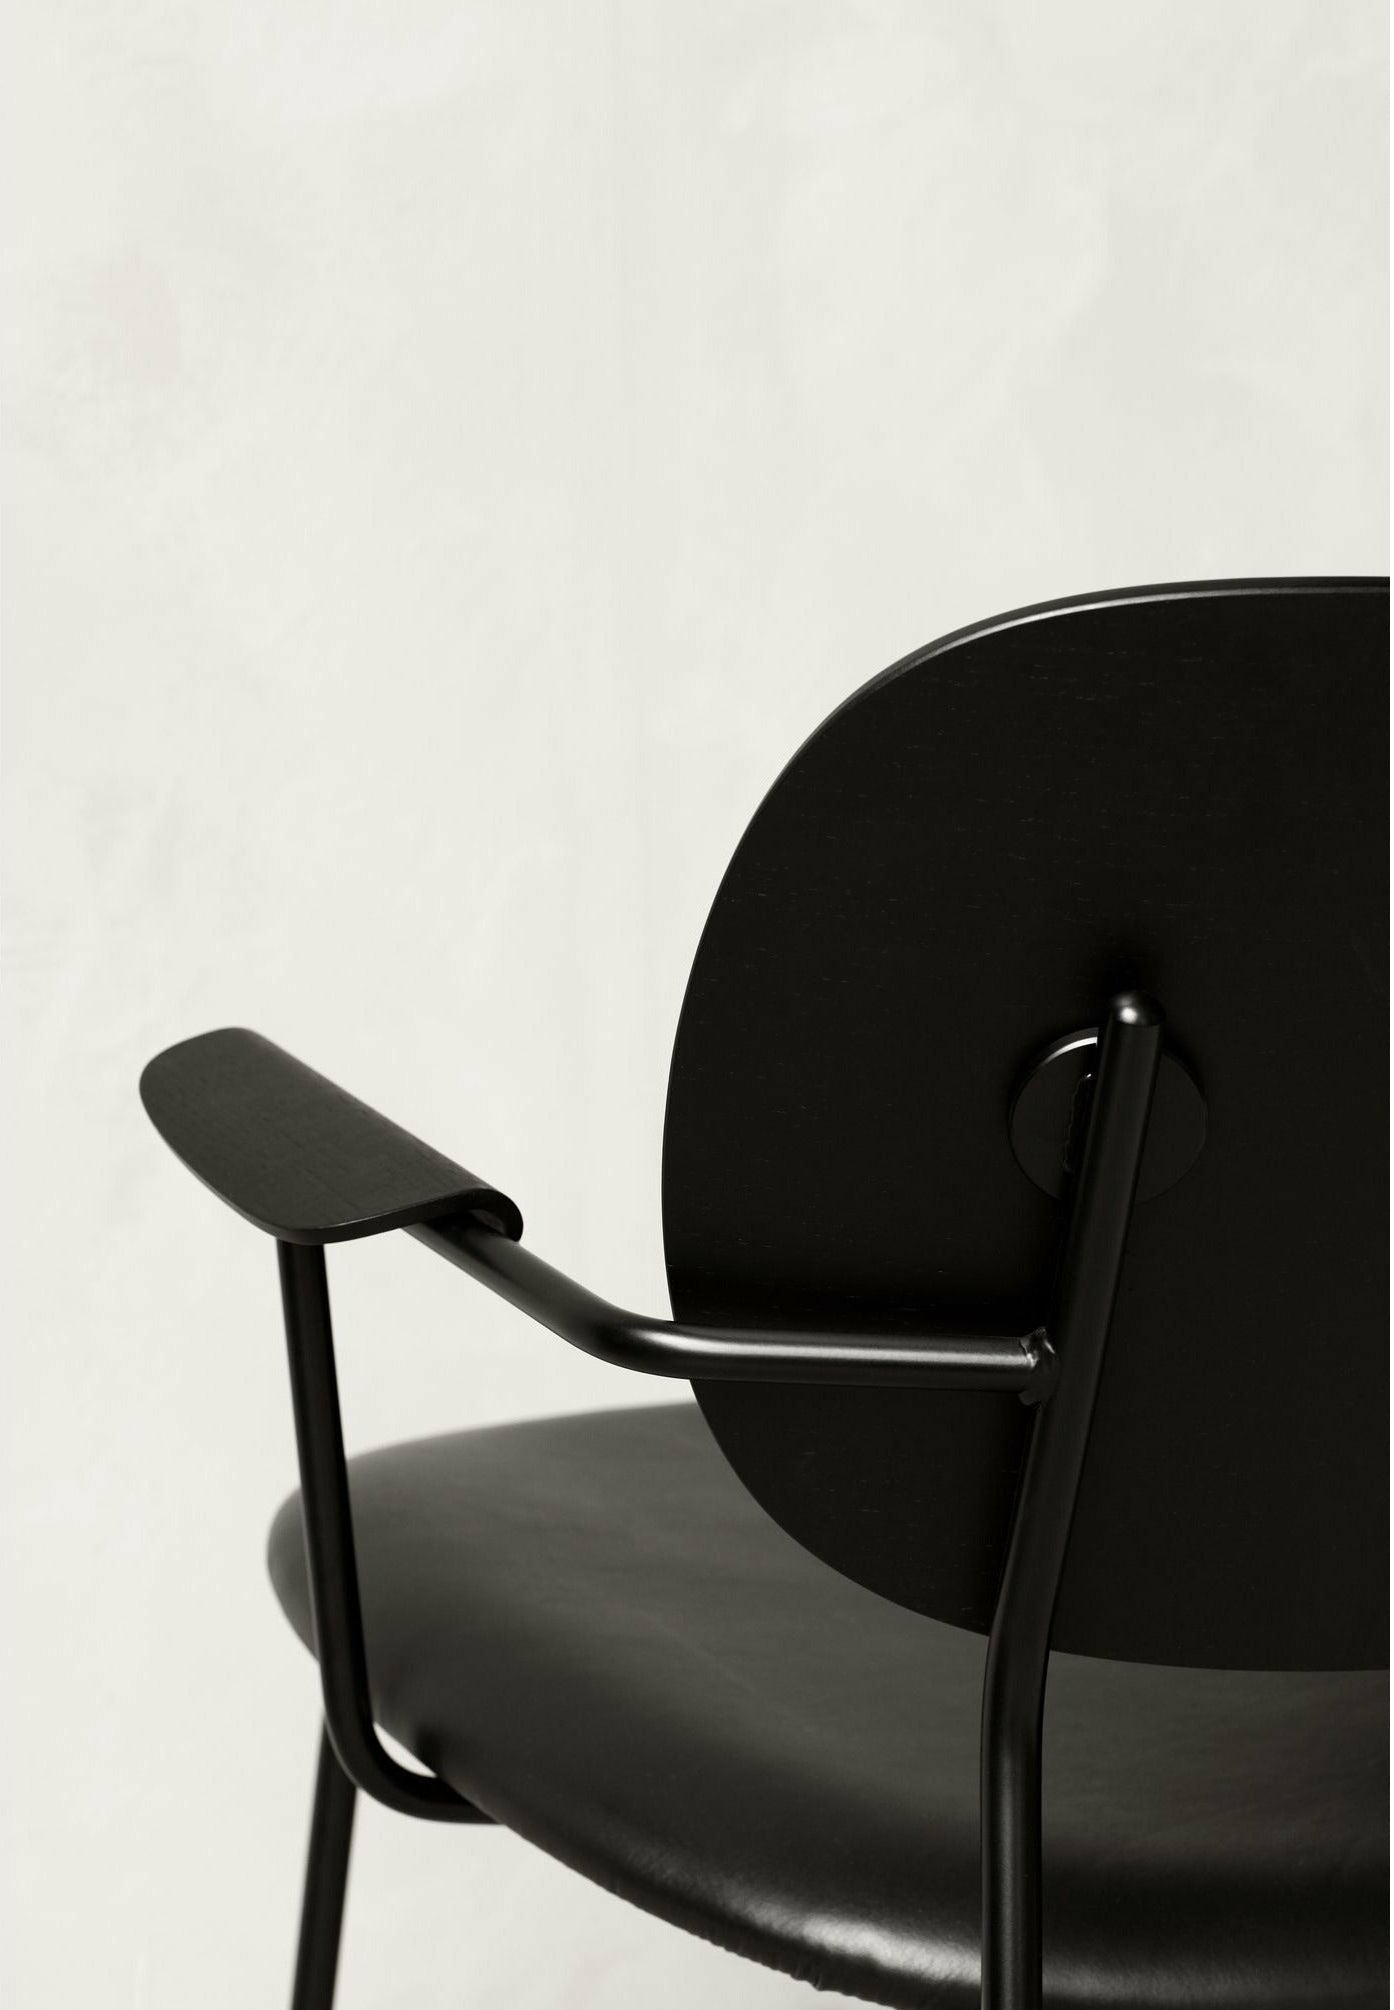 Audo Copenhagen Co Lounge Chair Natural Oak, Dakar 0250